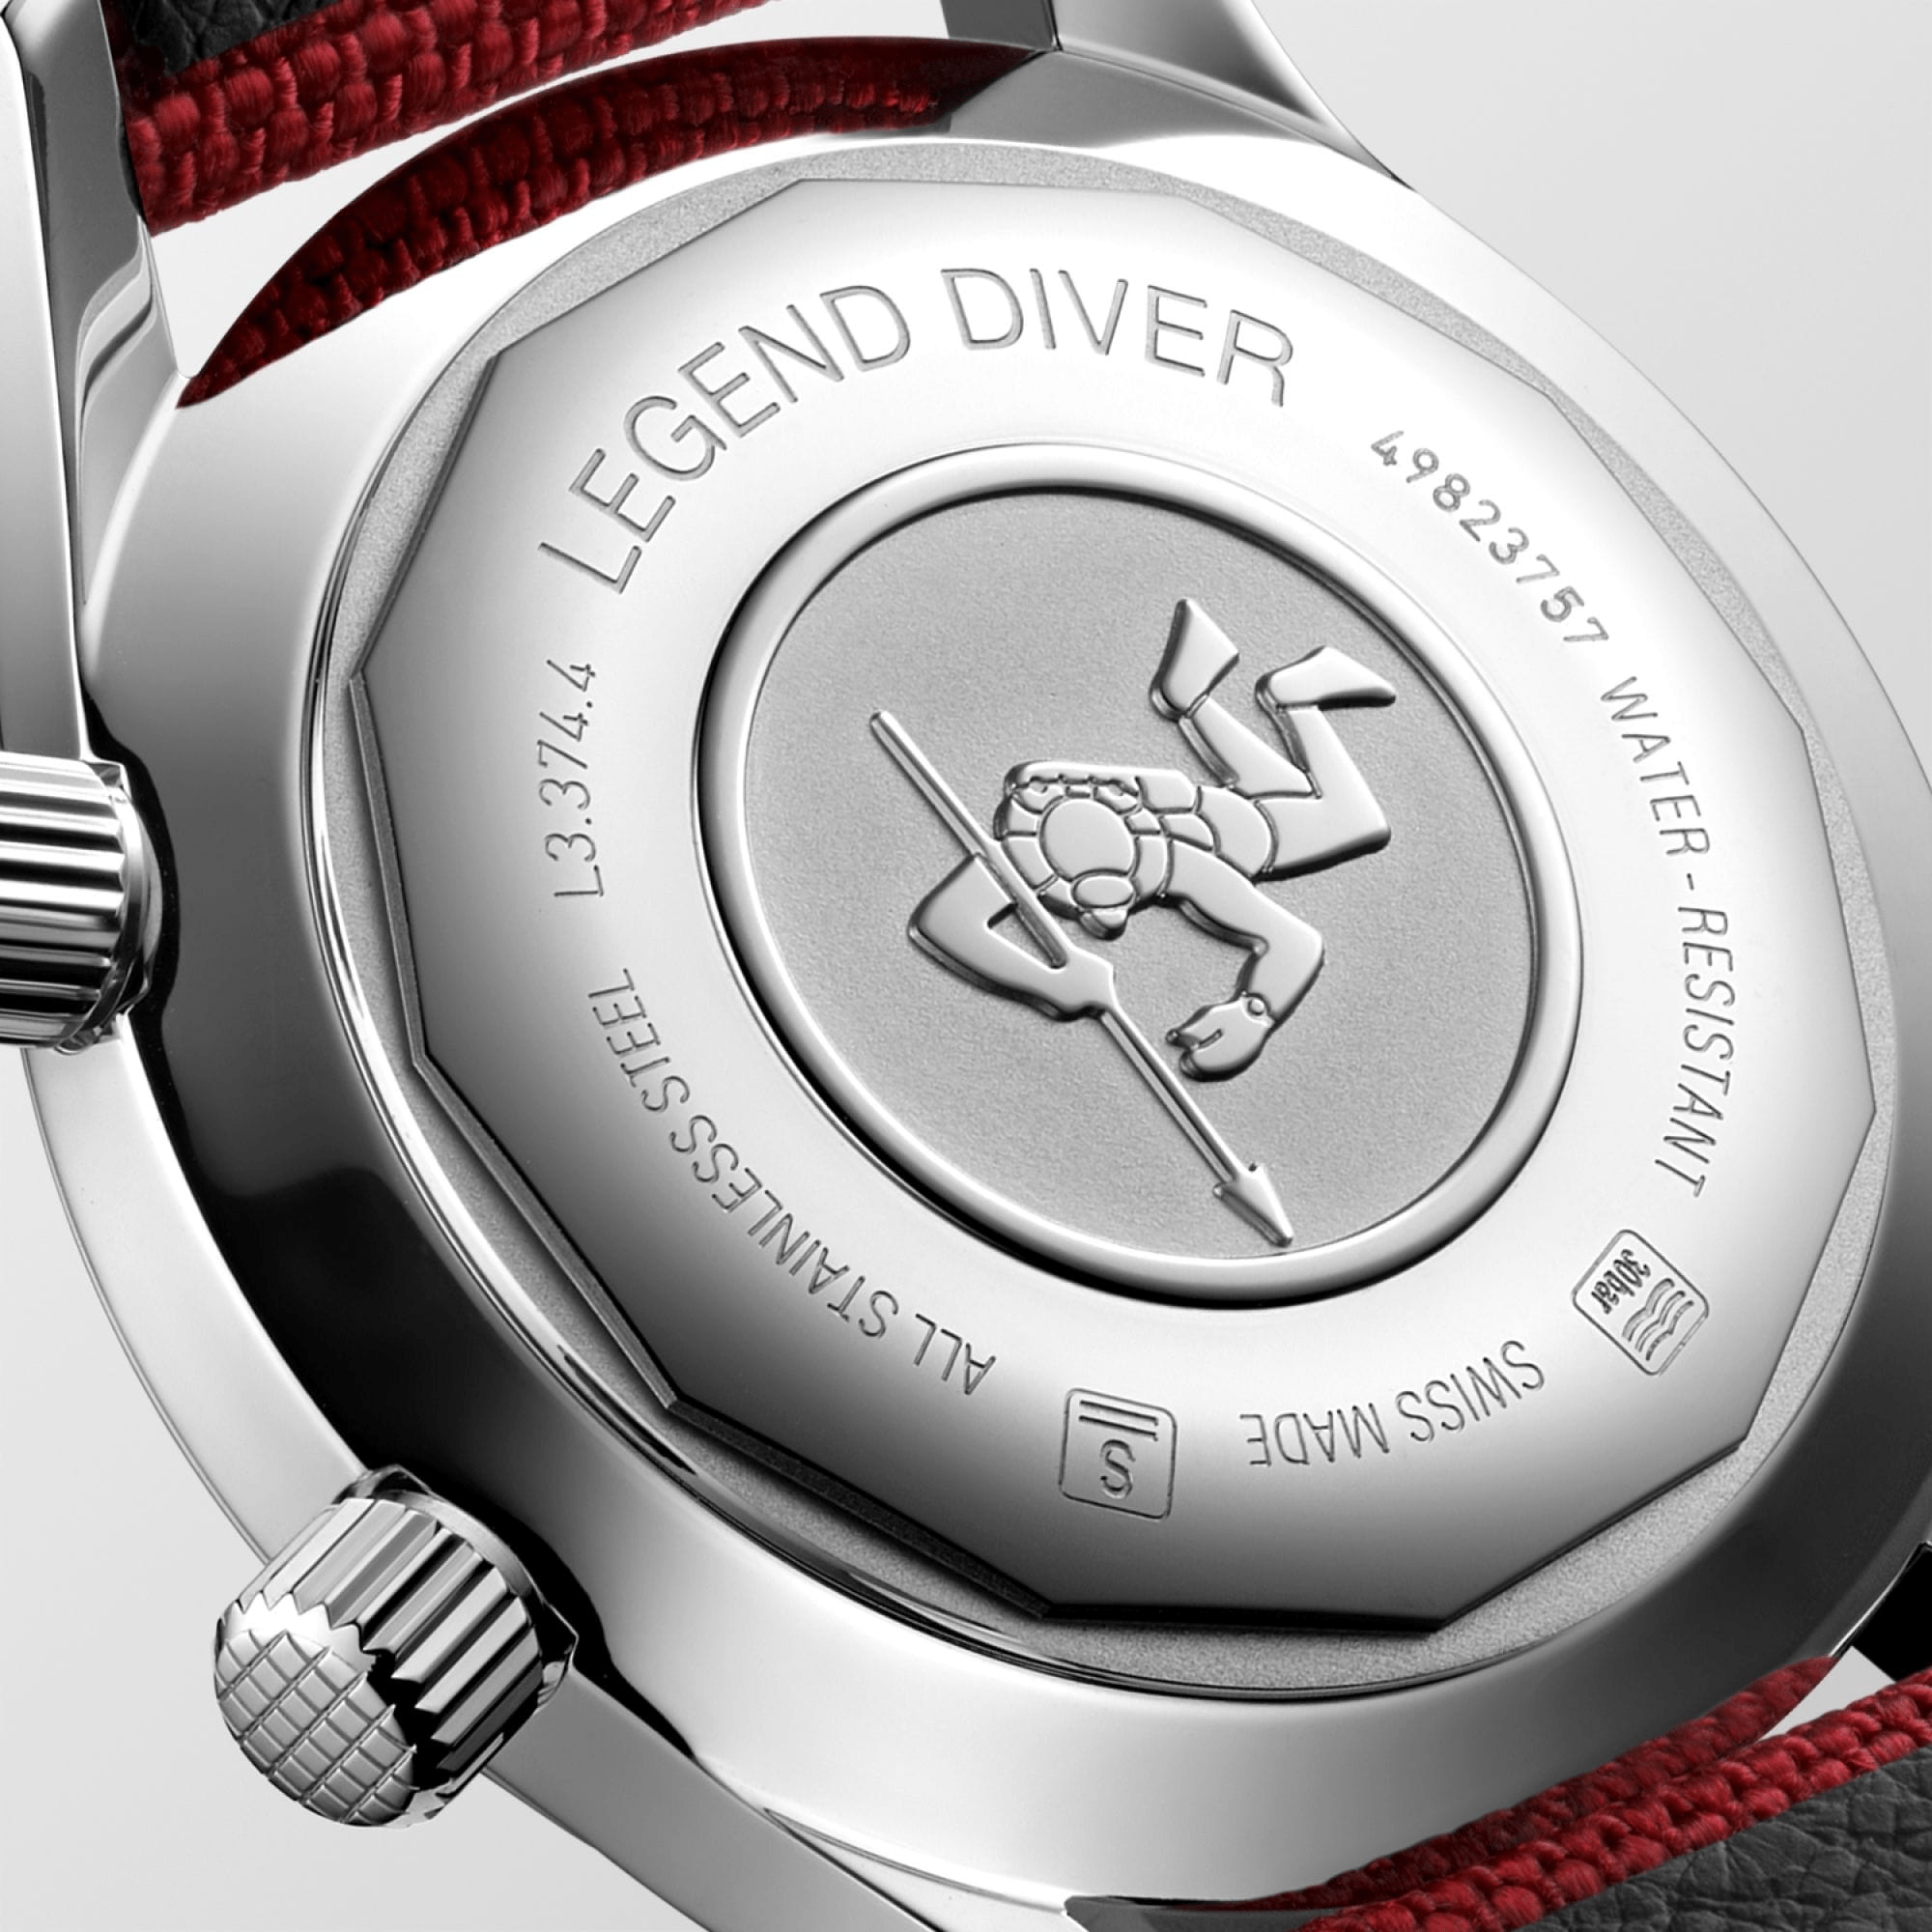 Longines Legend Diver 36mm Red Automatic Unisex Watch L33744402